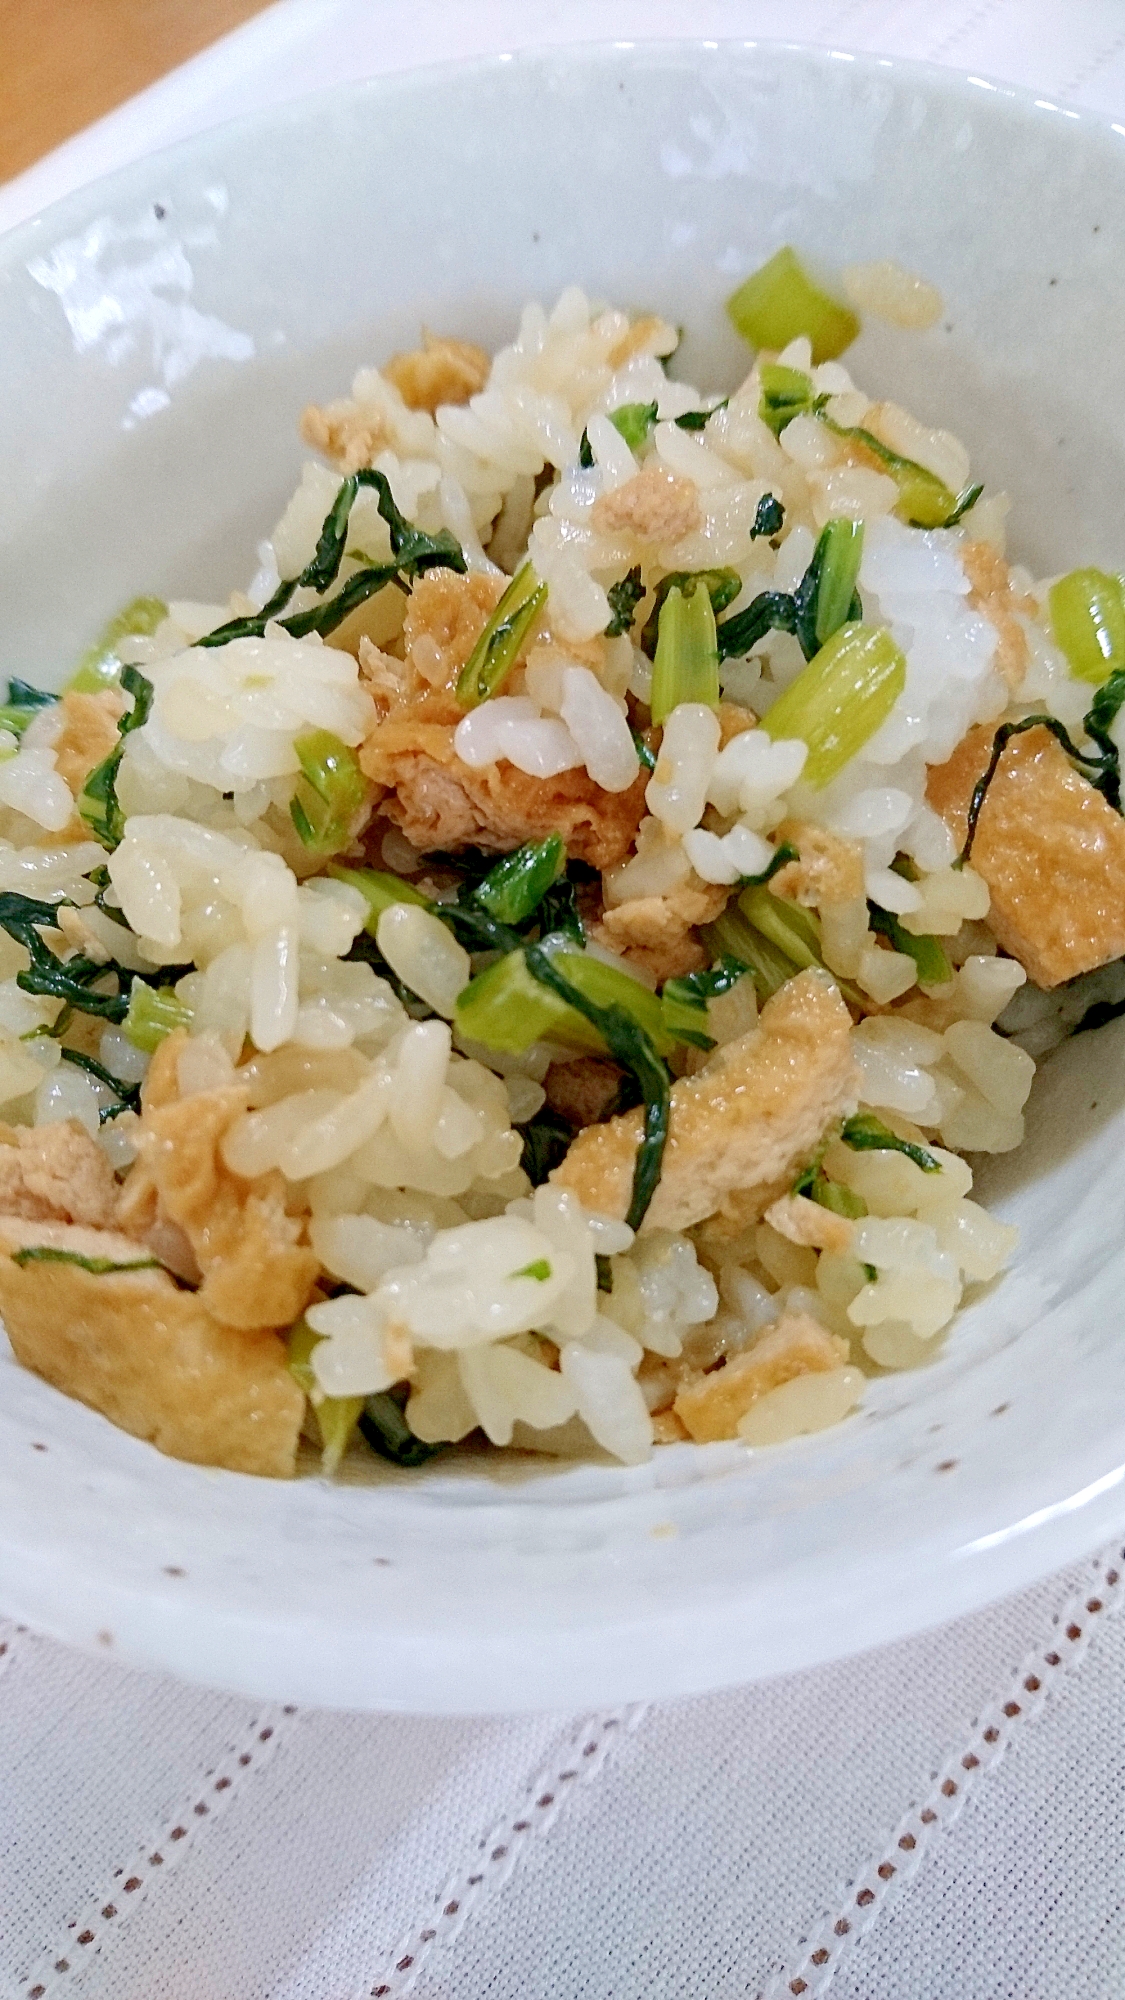 小松菜と油揚げの混ぜご飯